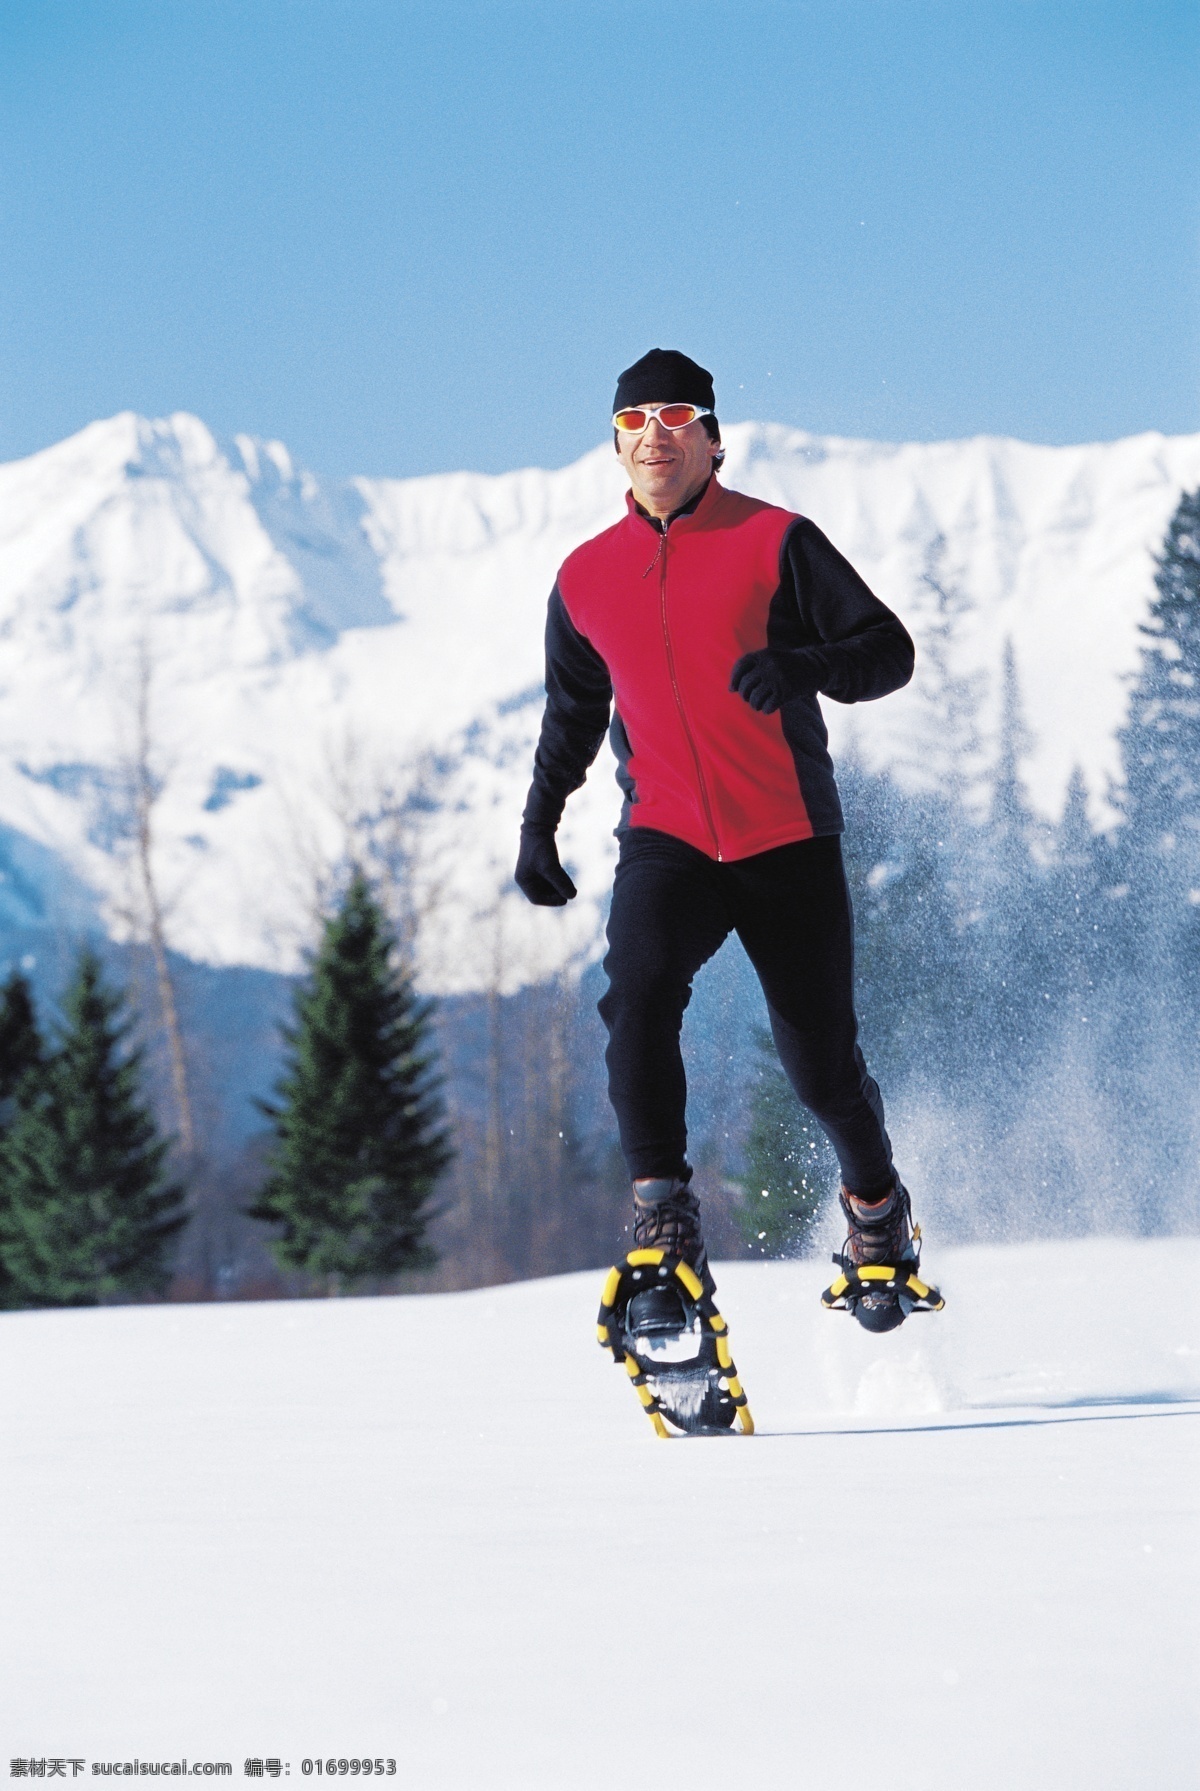 划雪运动 极限运动 运动图片 生活百科 摄影图片 体育运动 白色